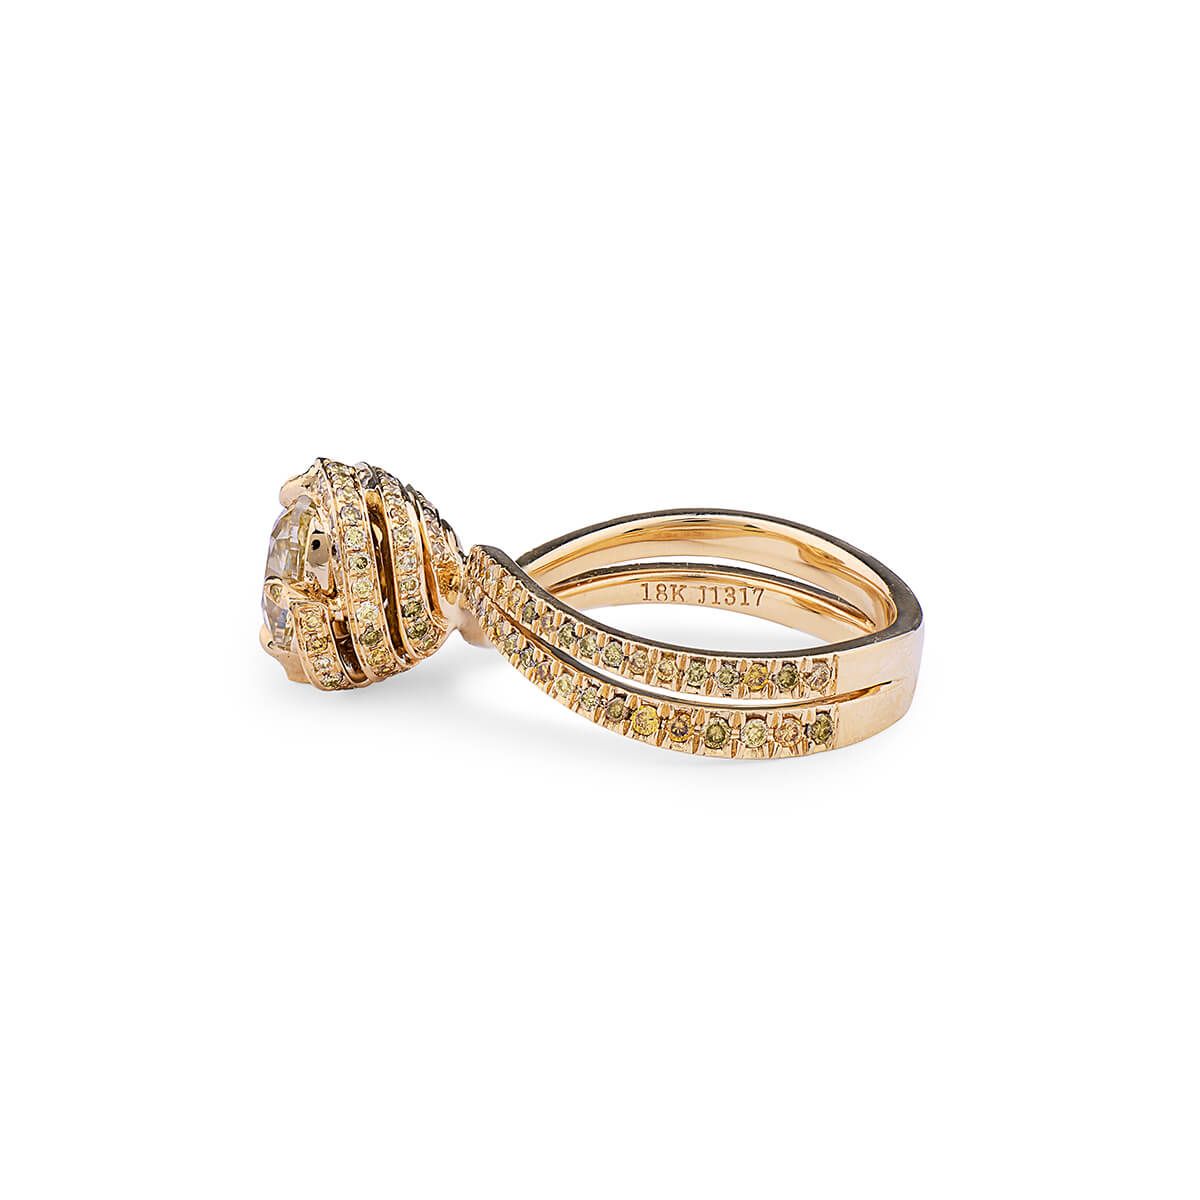 浅 呈褐色的 黄色 钻石 戒指, 1.50 重量 (2.22 克拉 总重), 枕型 形状, EG_Lab 认证, J6026292229